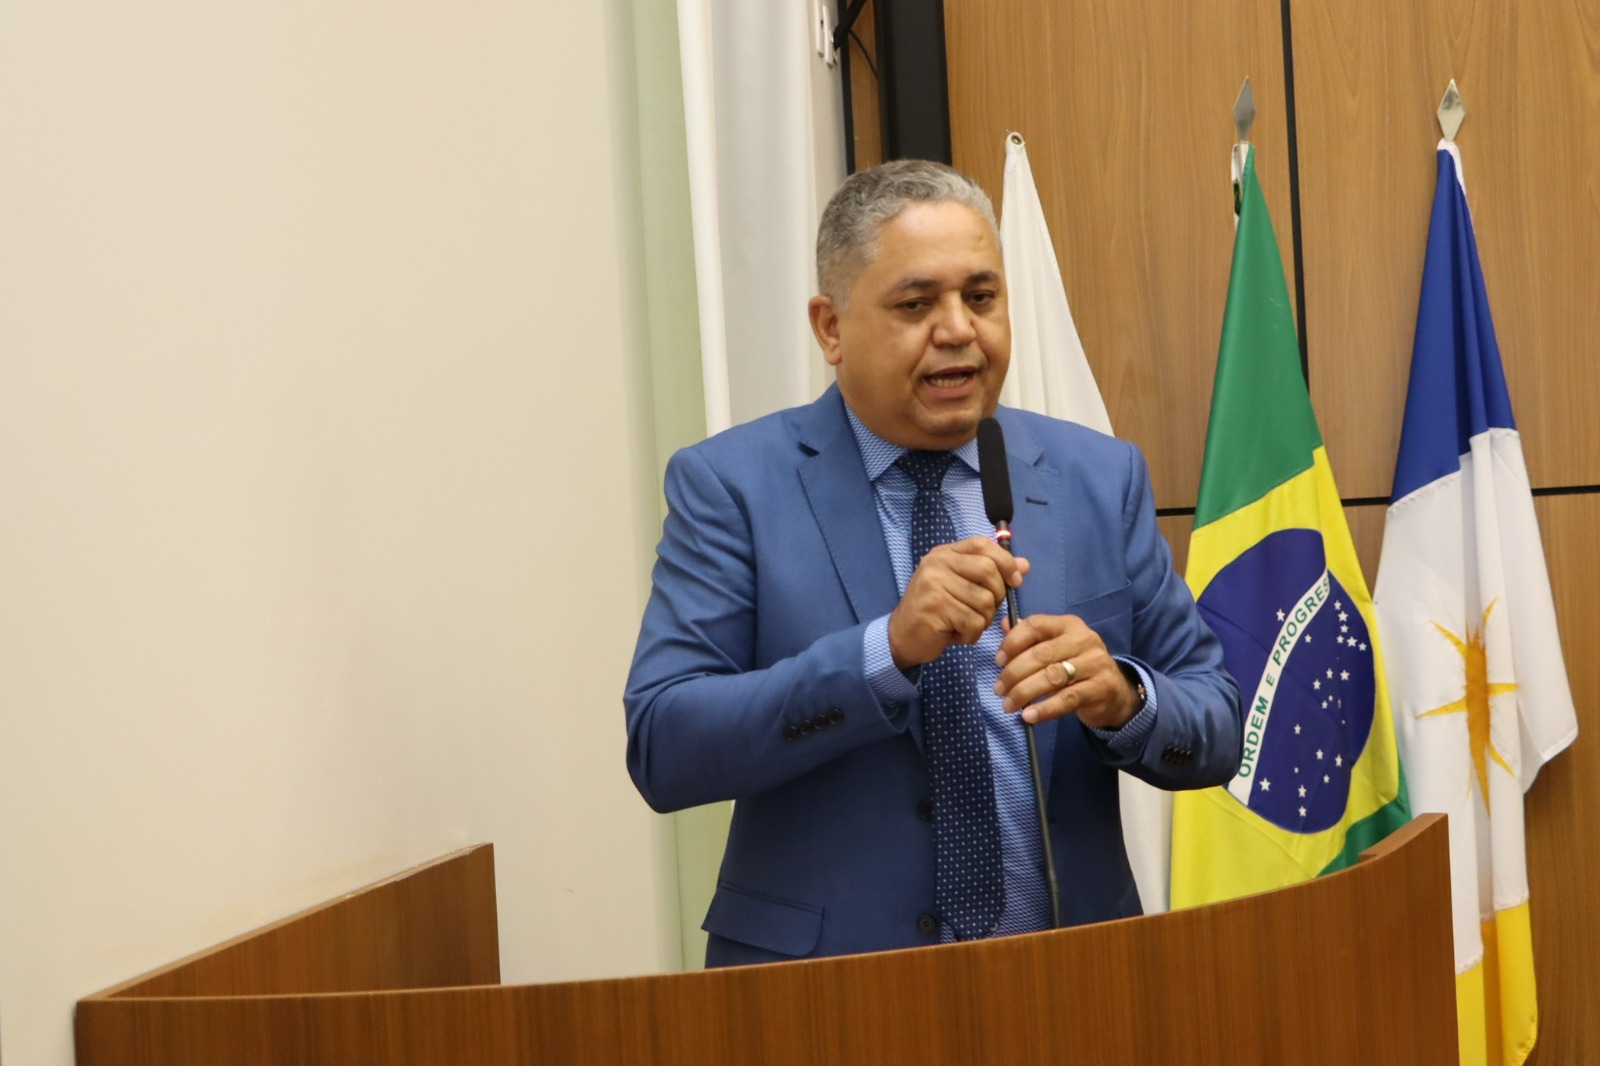 Vereador Eudes Assis solicita reforma e limpeza urgente na Unidade de Saúde da Família do setor Santa Bárbara